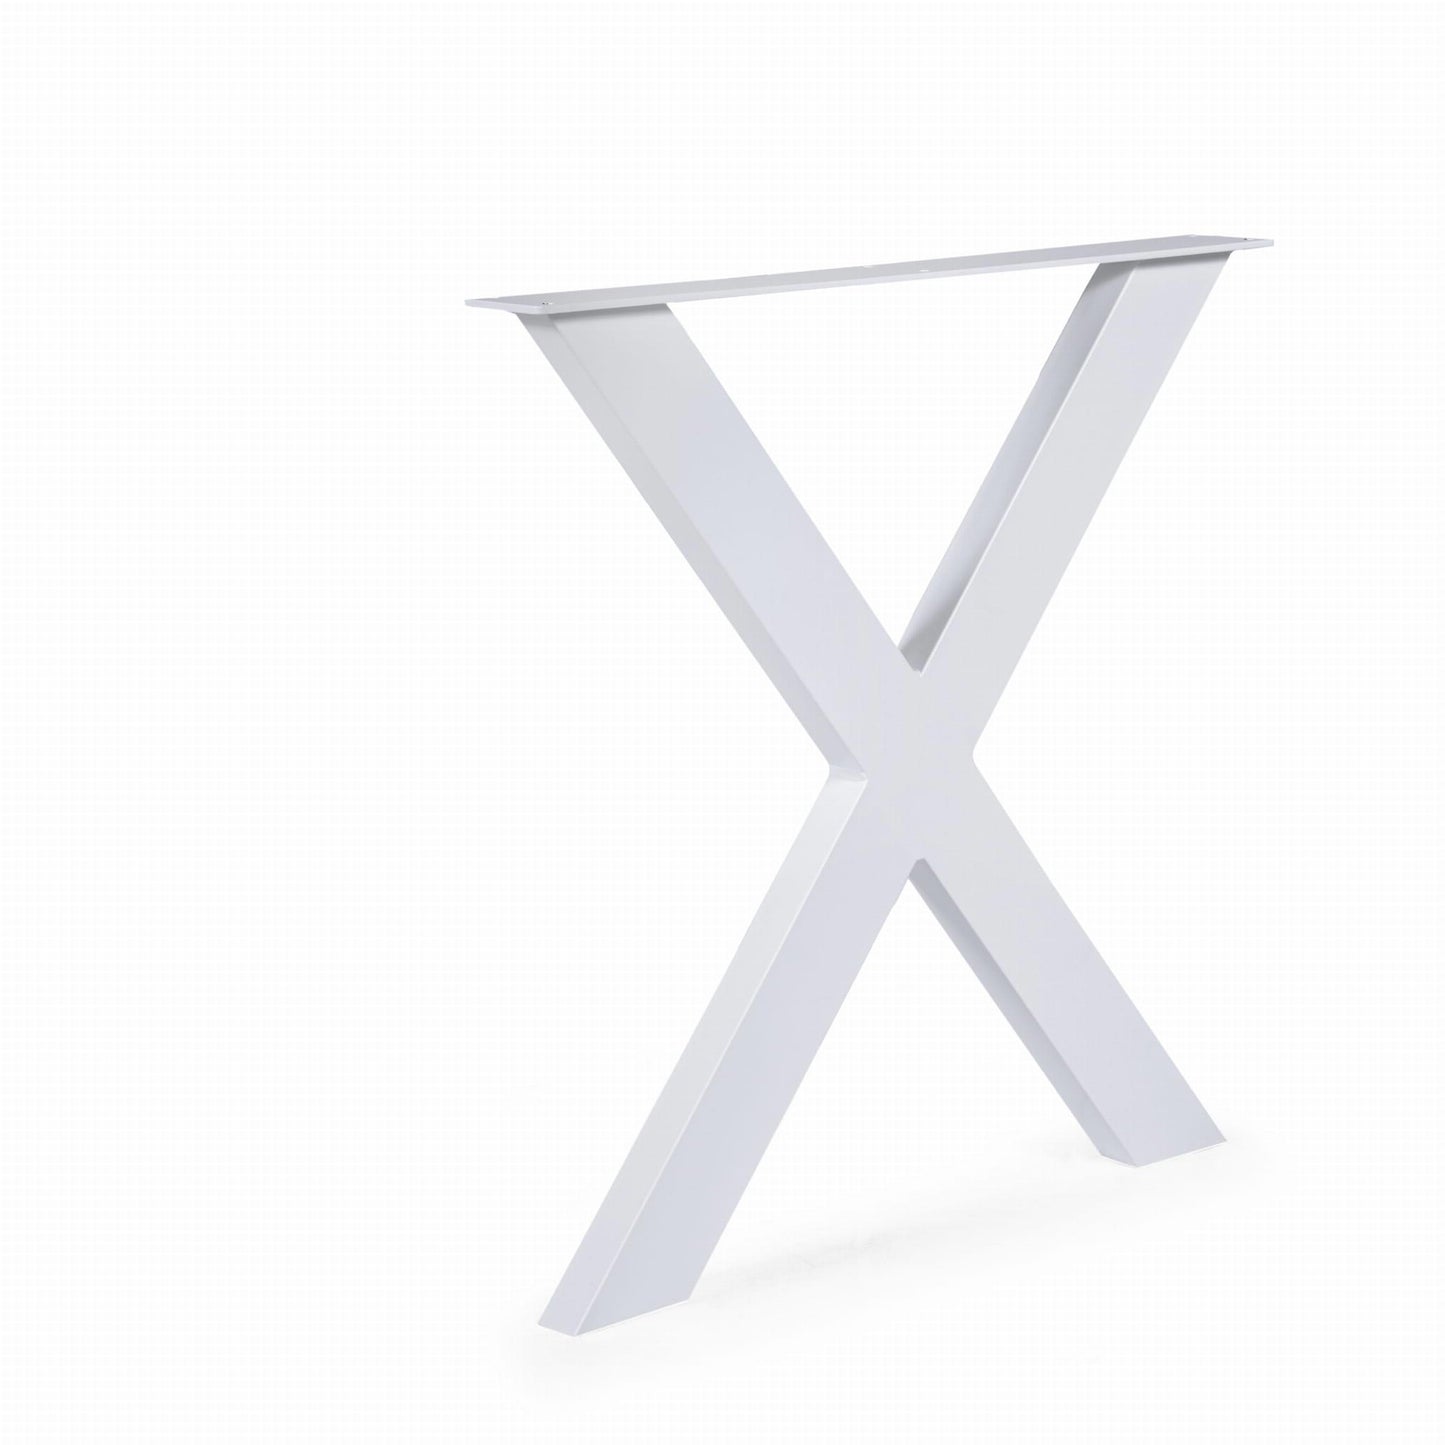 Metallinen Pöydänjalka X 2kpl 100x40 Valkoinen upea malli